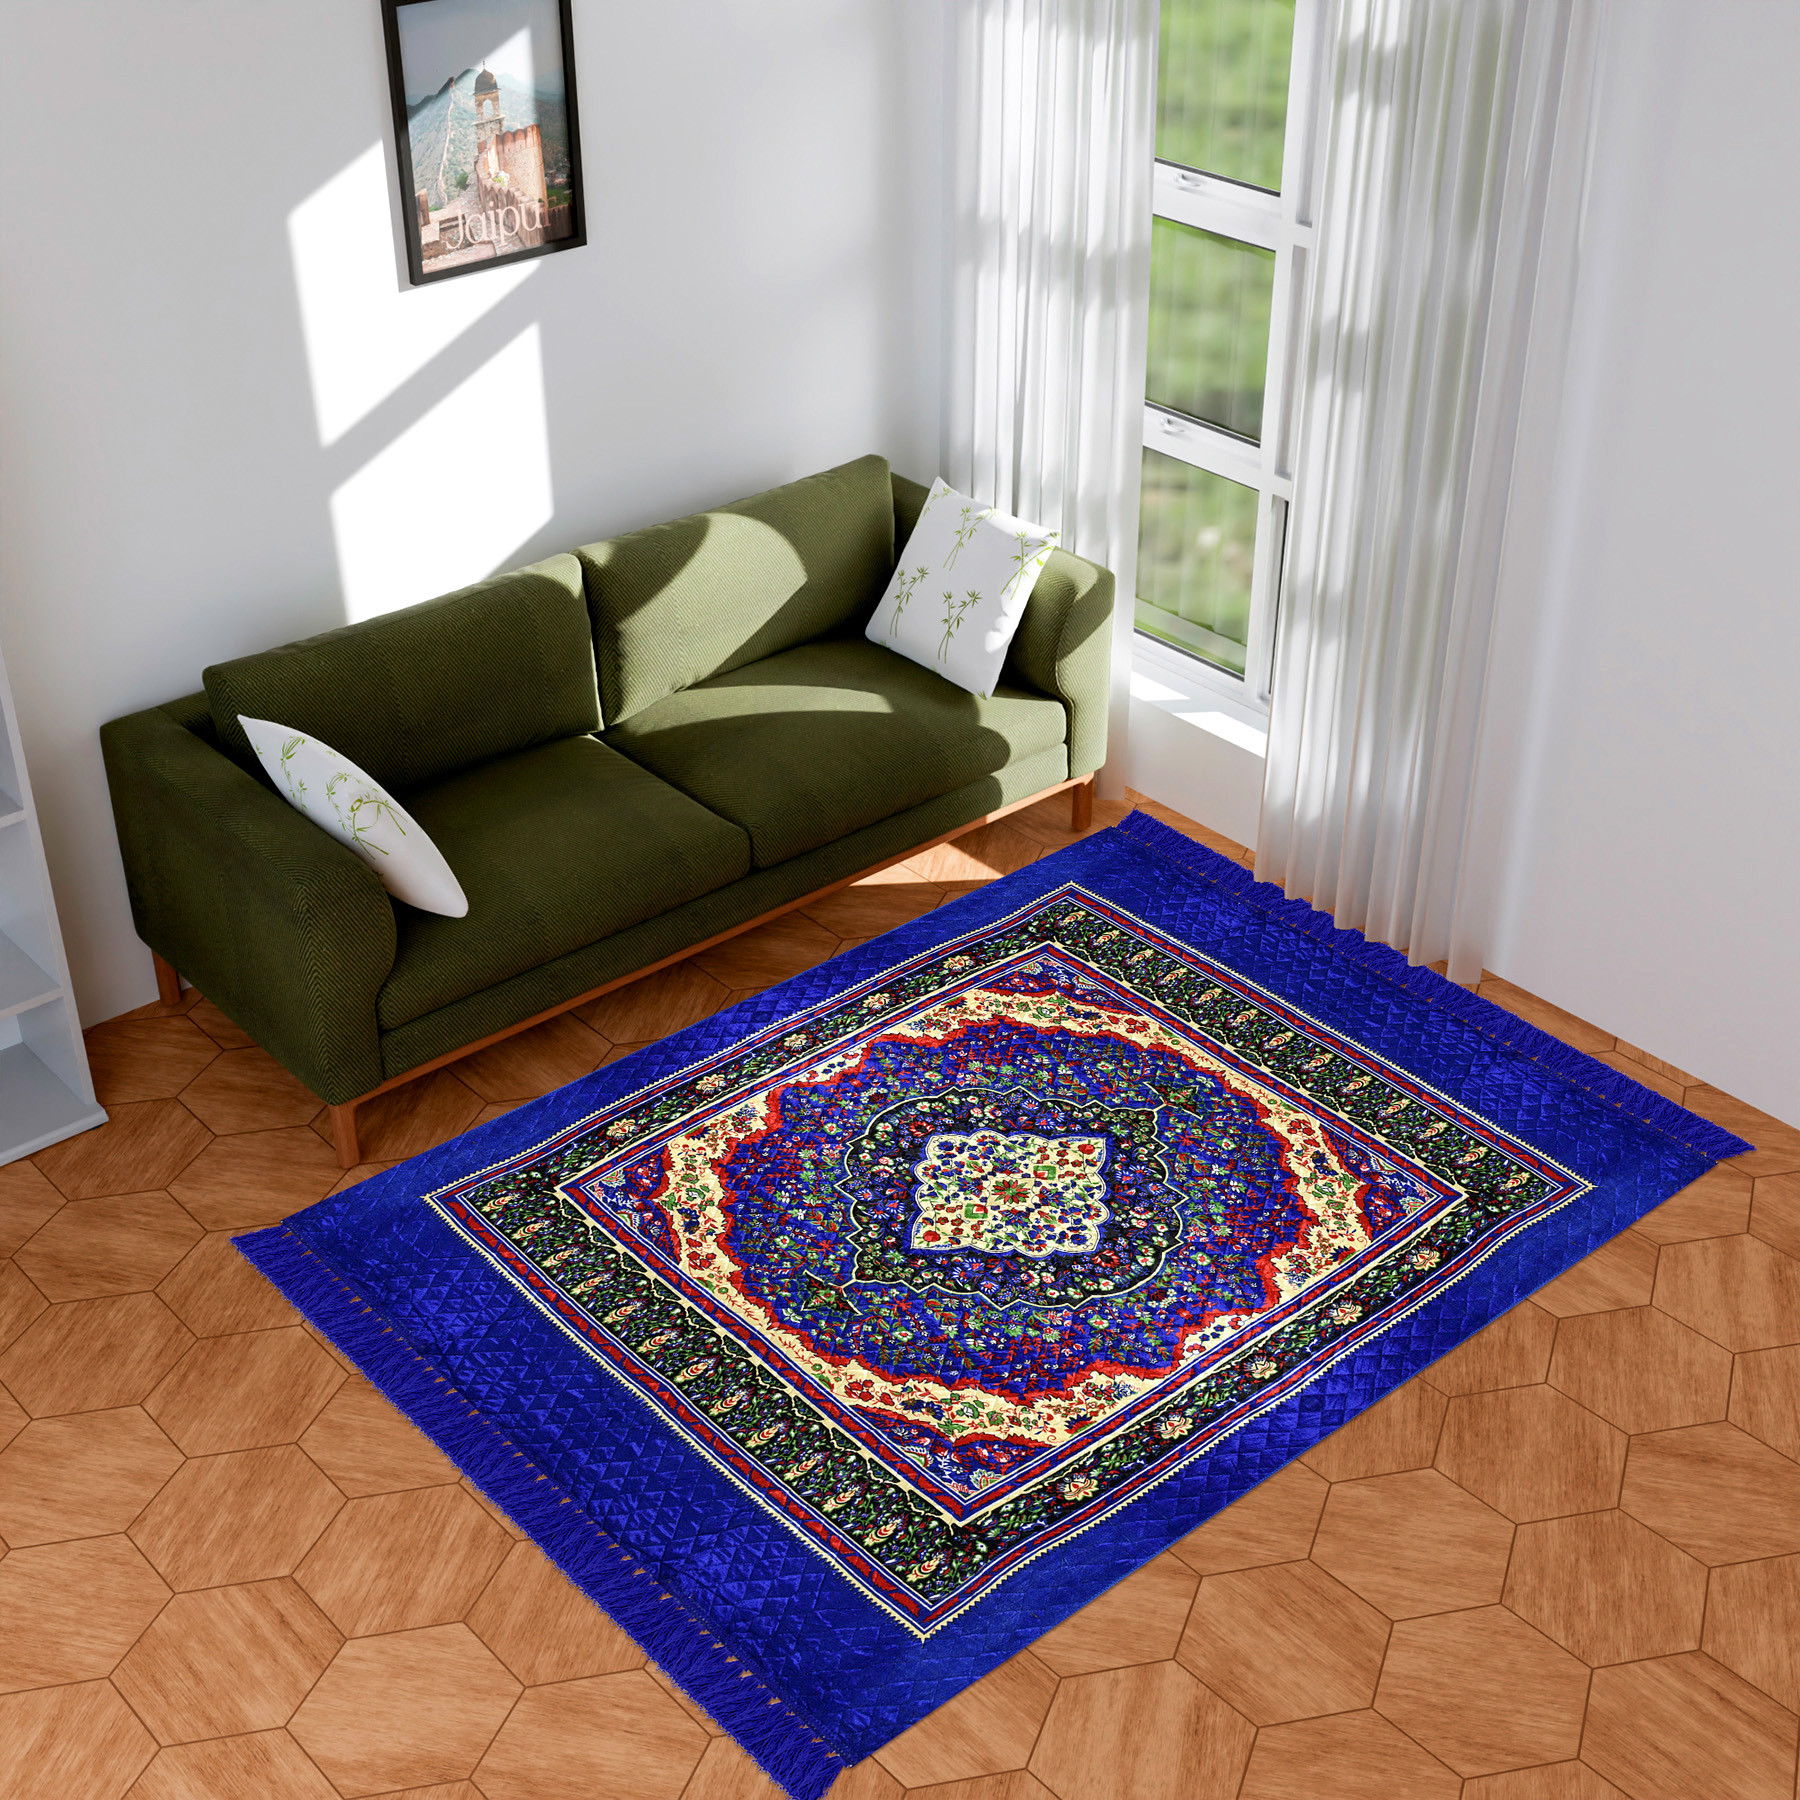 Kuber Industries Carpet | Velvet Carpet-Rug for Home Décor | Carpet Rug for Bedroom | Printed Carpet for Living Room | Prayer-Yoga Mat | Carpet for Hall | 6.5x7.5 Ft | Blue